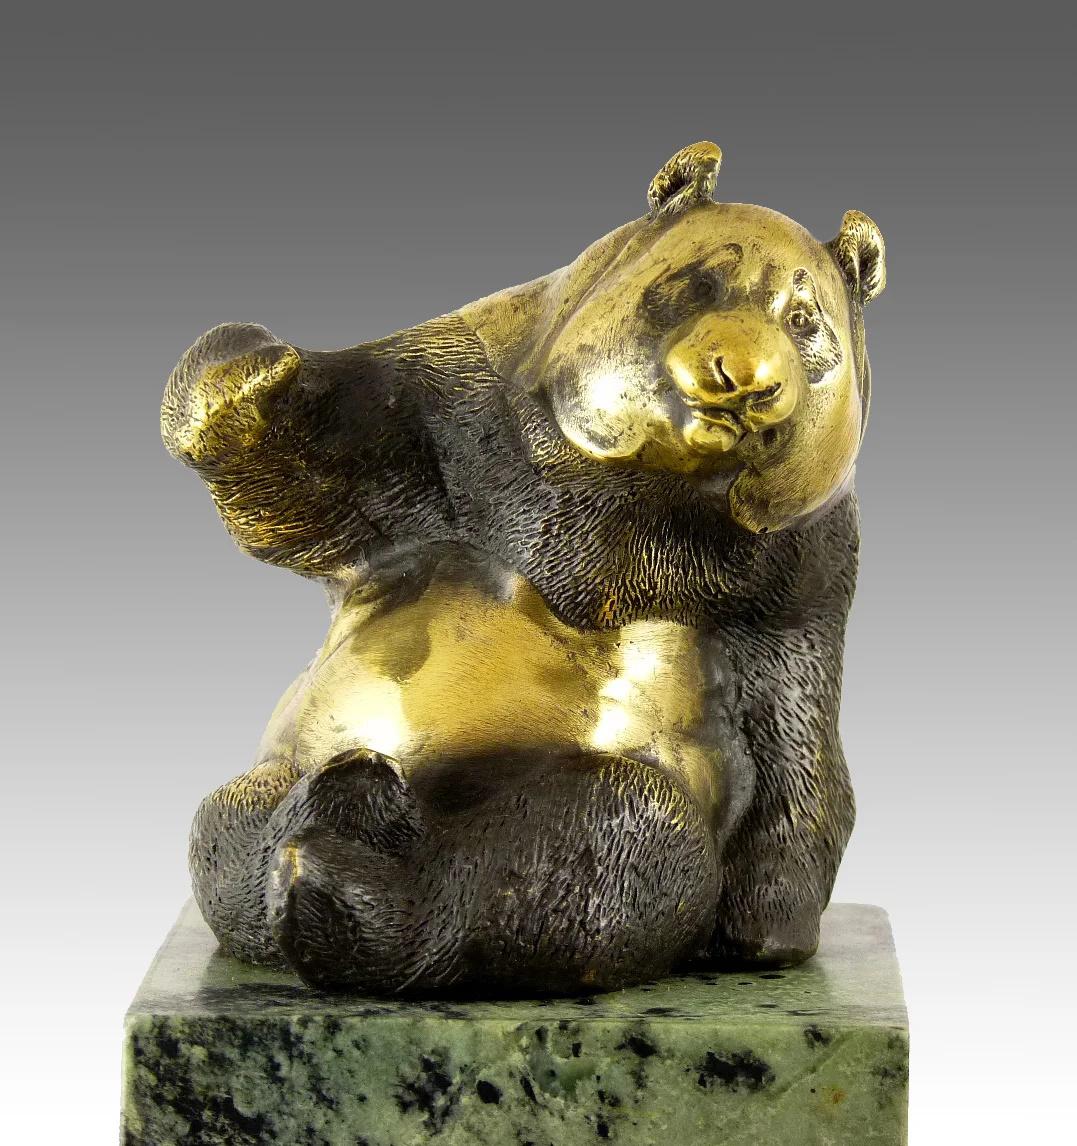 Vergoldete Bronzeplastik mit Patina, die einen Panda darstellt, 20. Jahrhundert.

Skulptur eines sitzenden Pandas aus vergoldeter Bronze und Patina, Marmorsockel, 20. Jahrhundert.  

H: 21cm, B: 8cm, T: 9cm